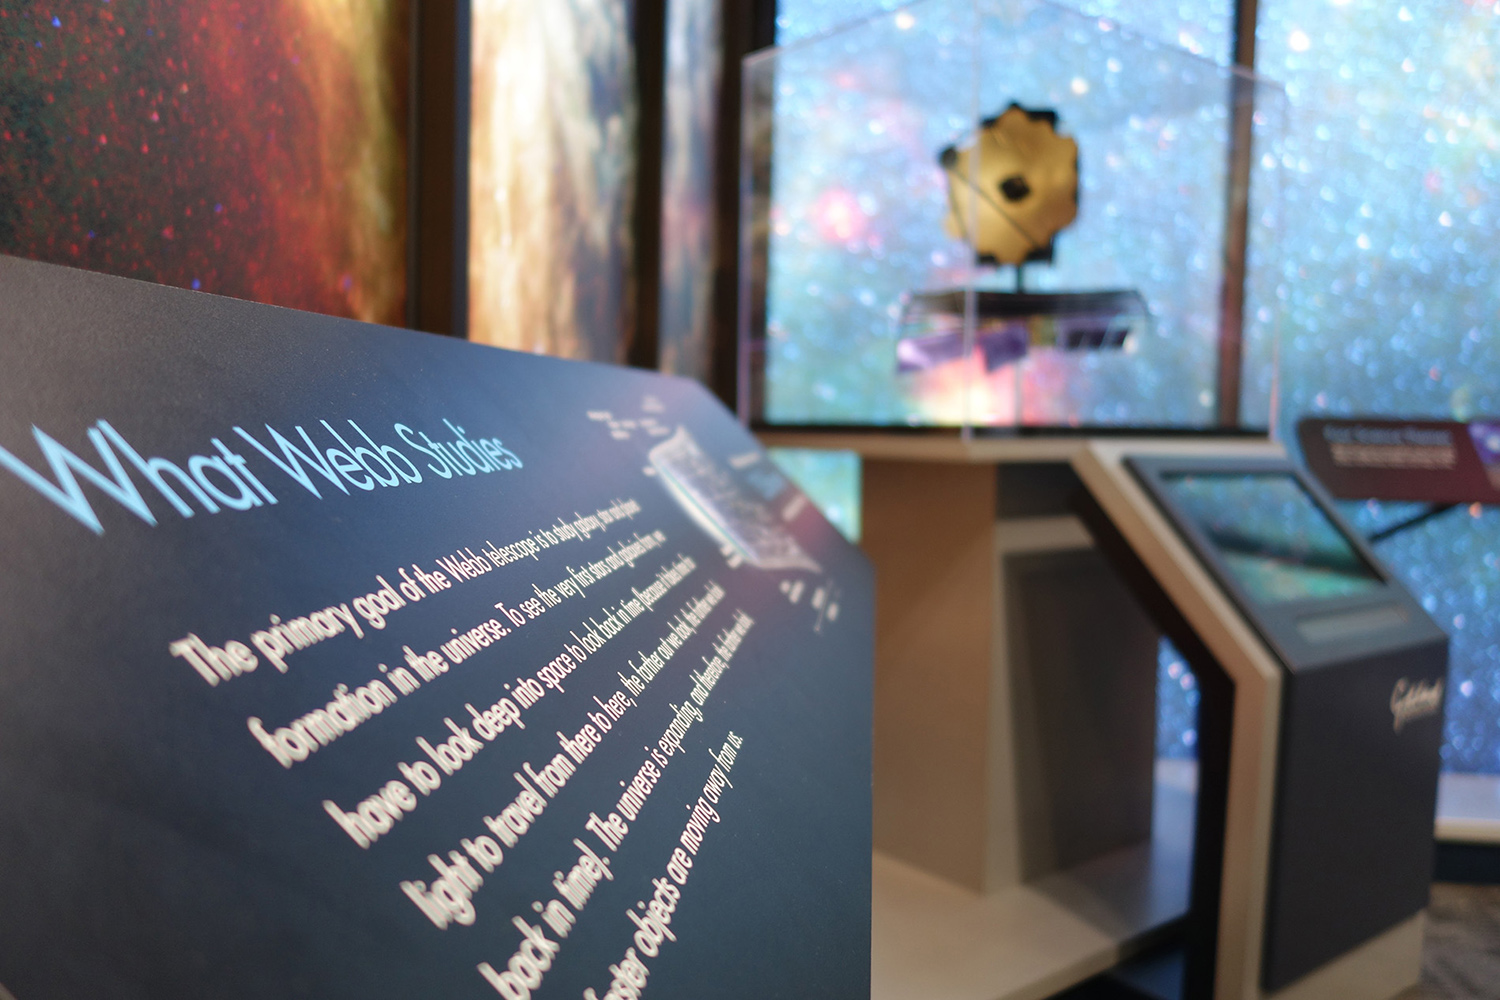 James Webb Space Telescope Exhibit